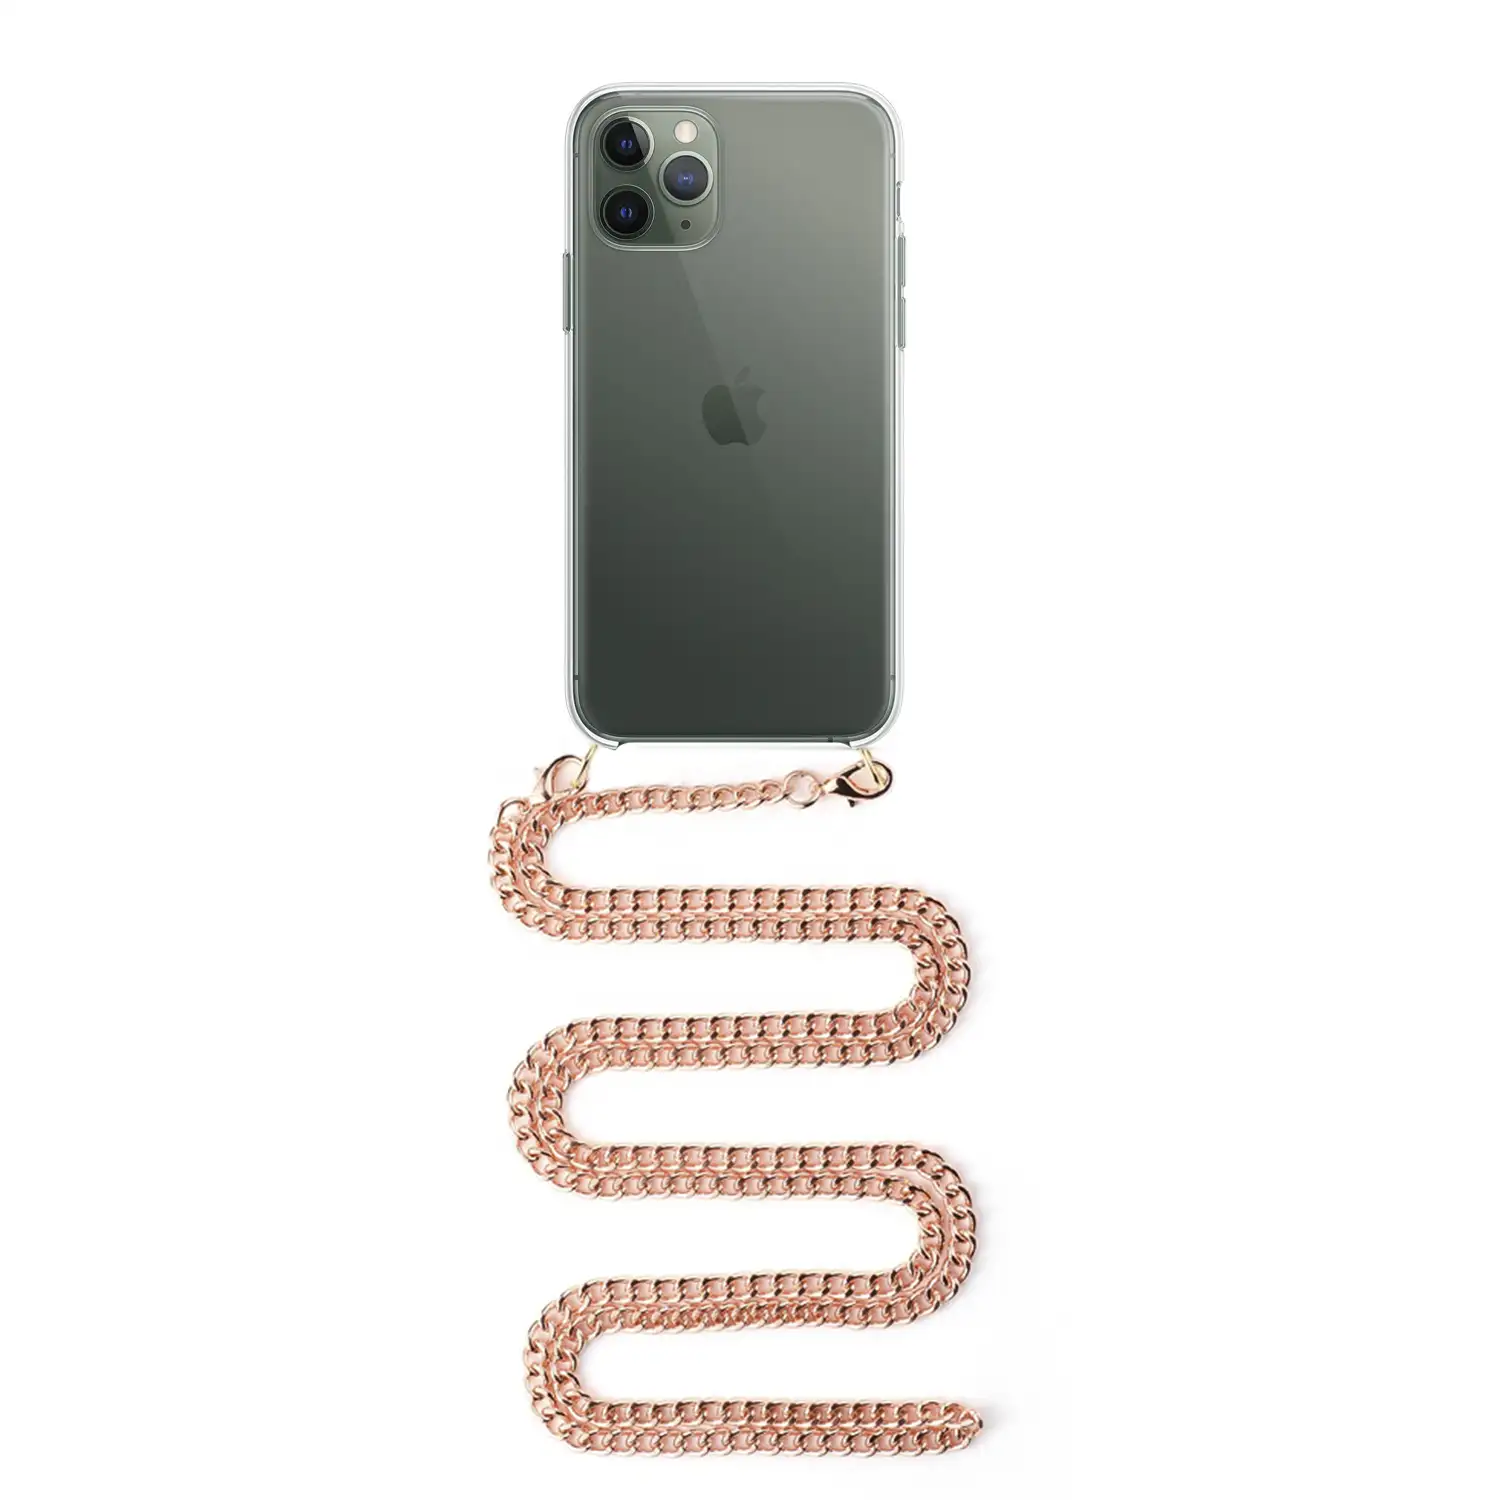 Carcasa transparente iPhone 11 Pro con colgante cadena metálica. Accesorio de moda, ajuste perfecto y máxima protección